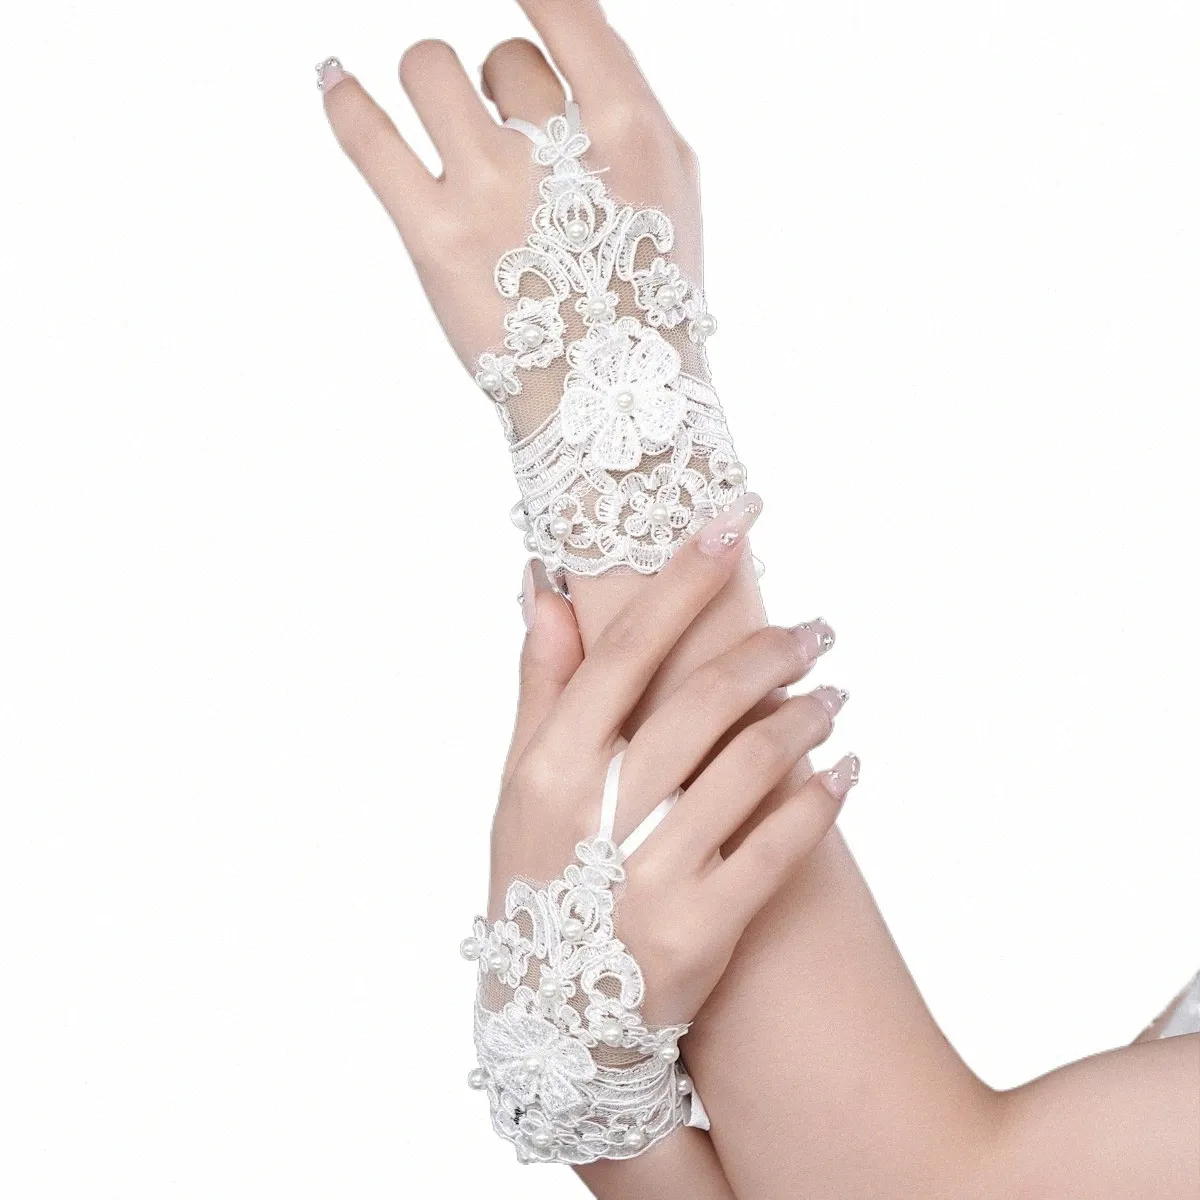 elegant Beaded Lace Short Bridal Gloves Fingerl Wedding Gloves White Ivory Wedding Accories Veu De Noiva for Women N4U6#